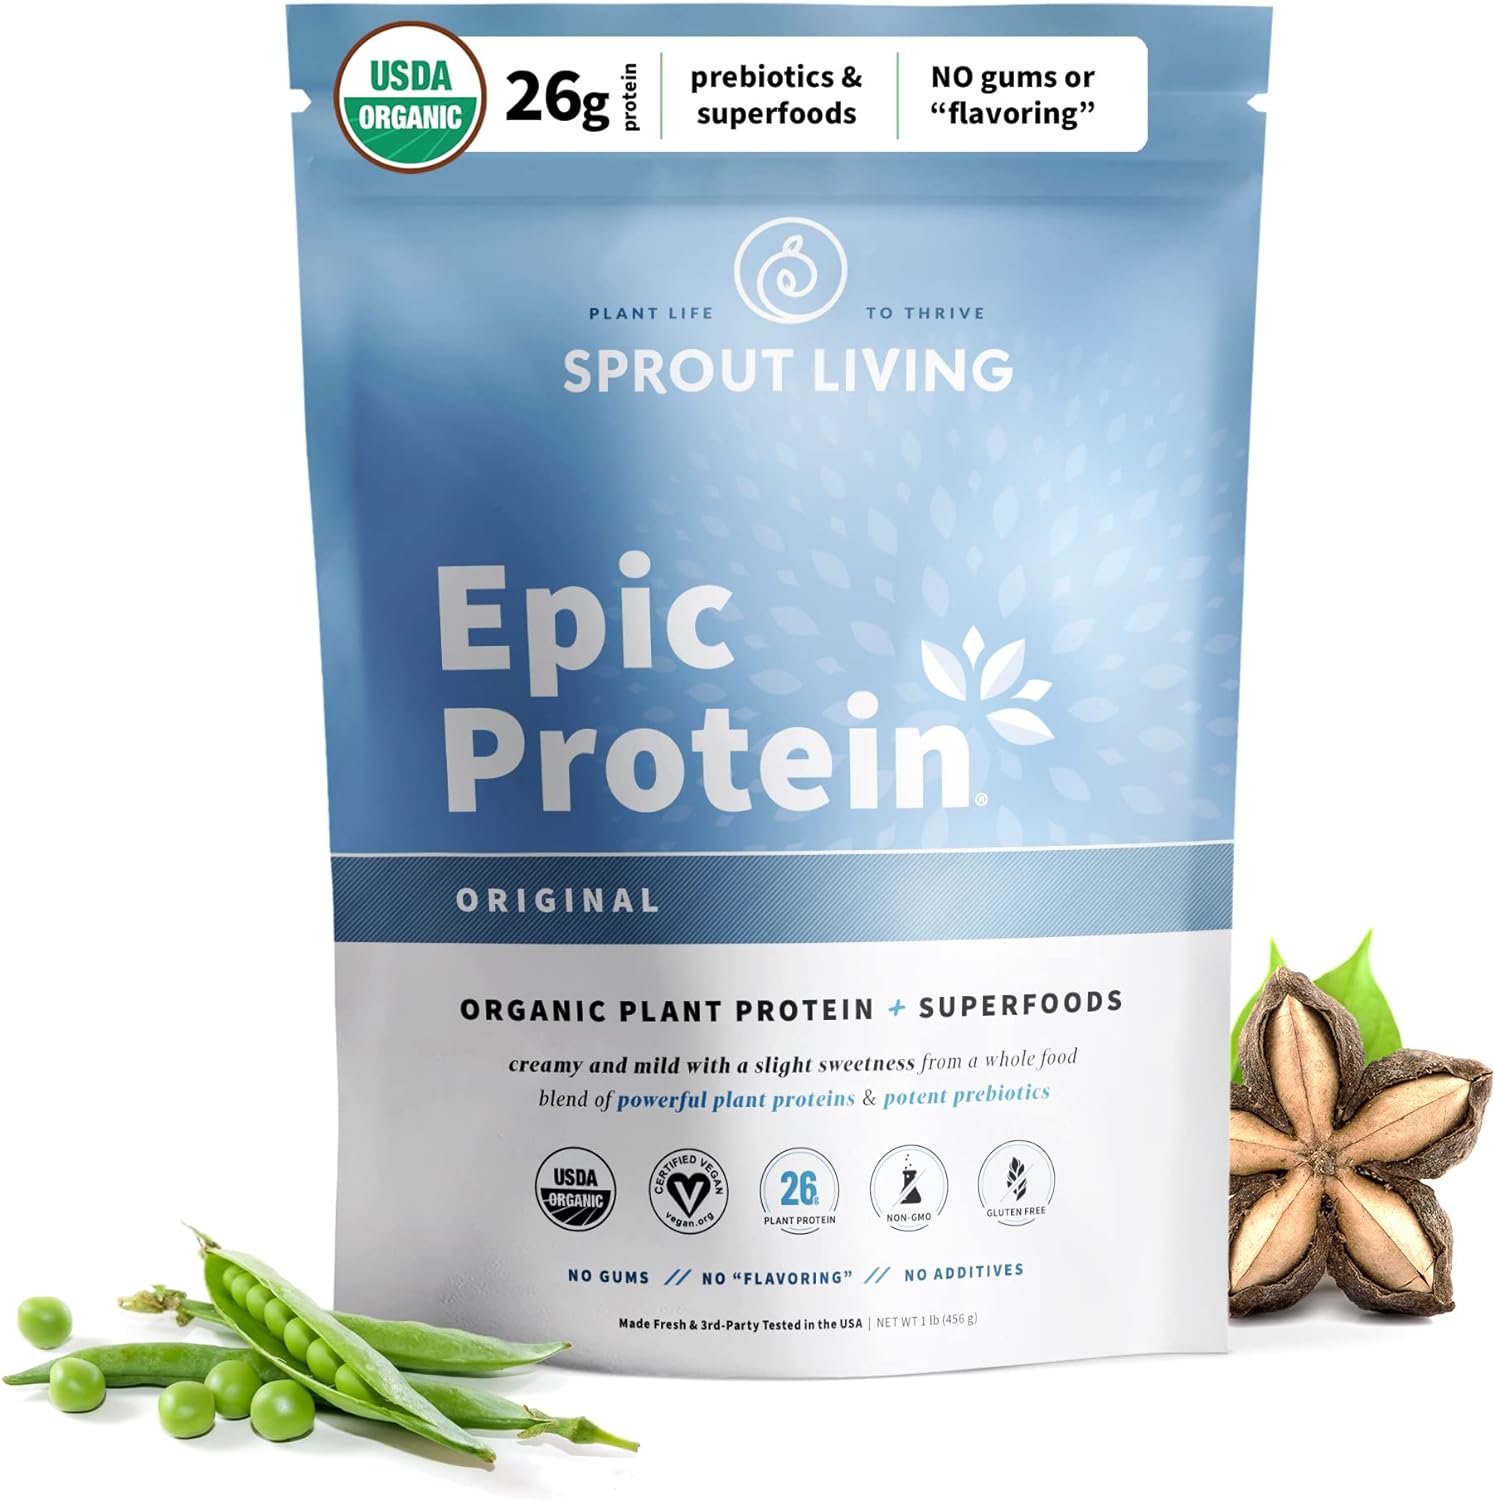 best vegan protein powder